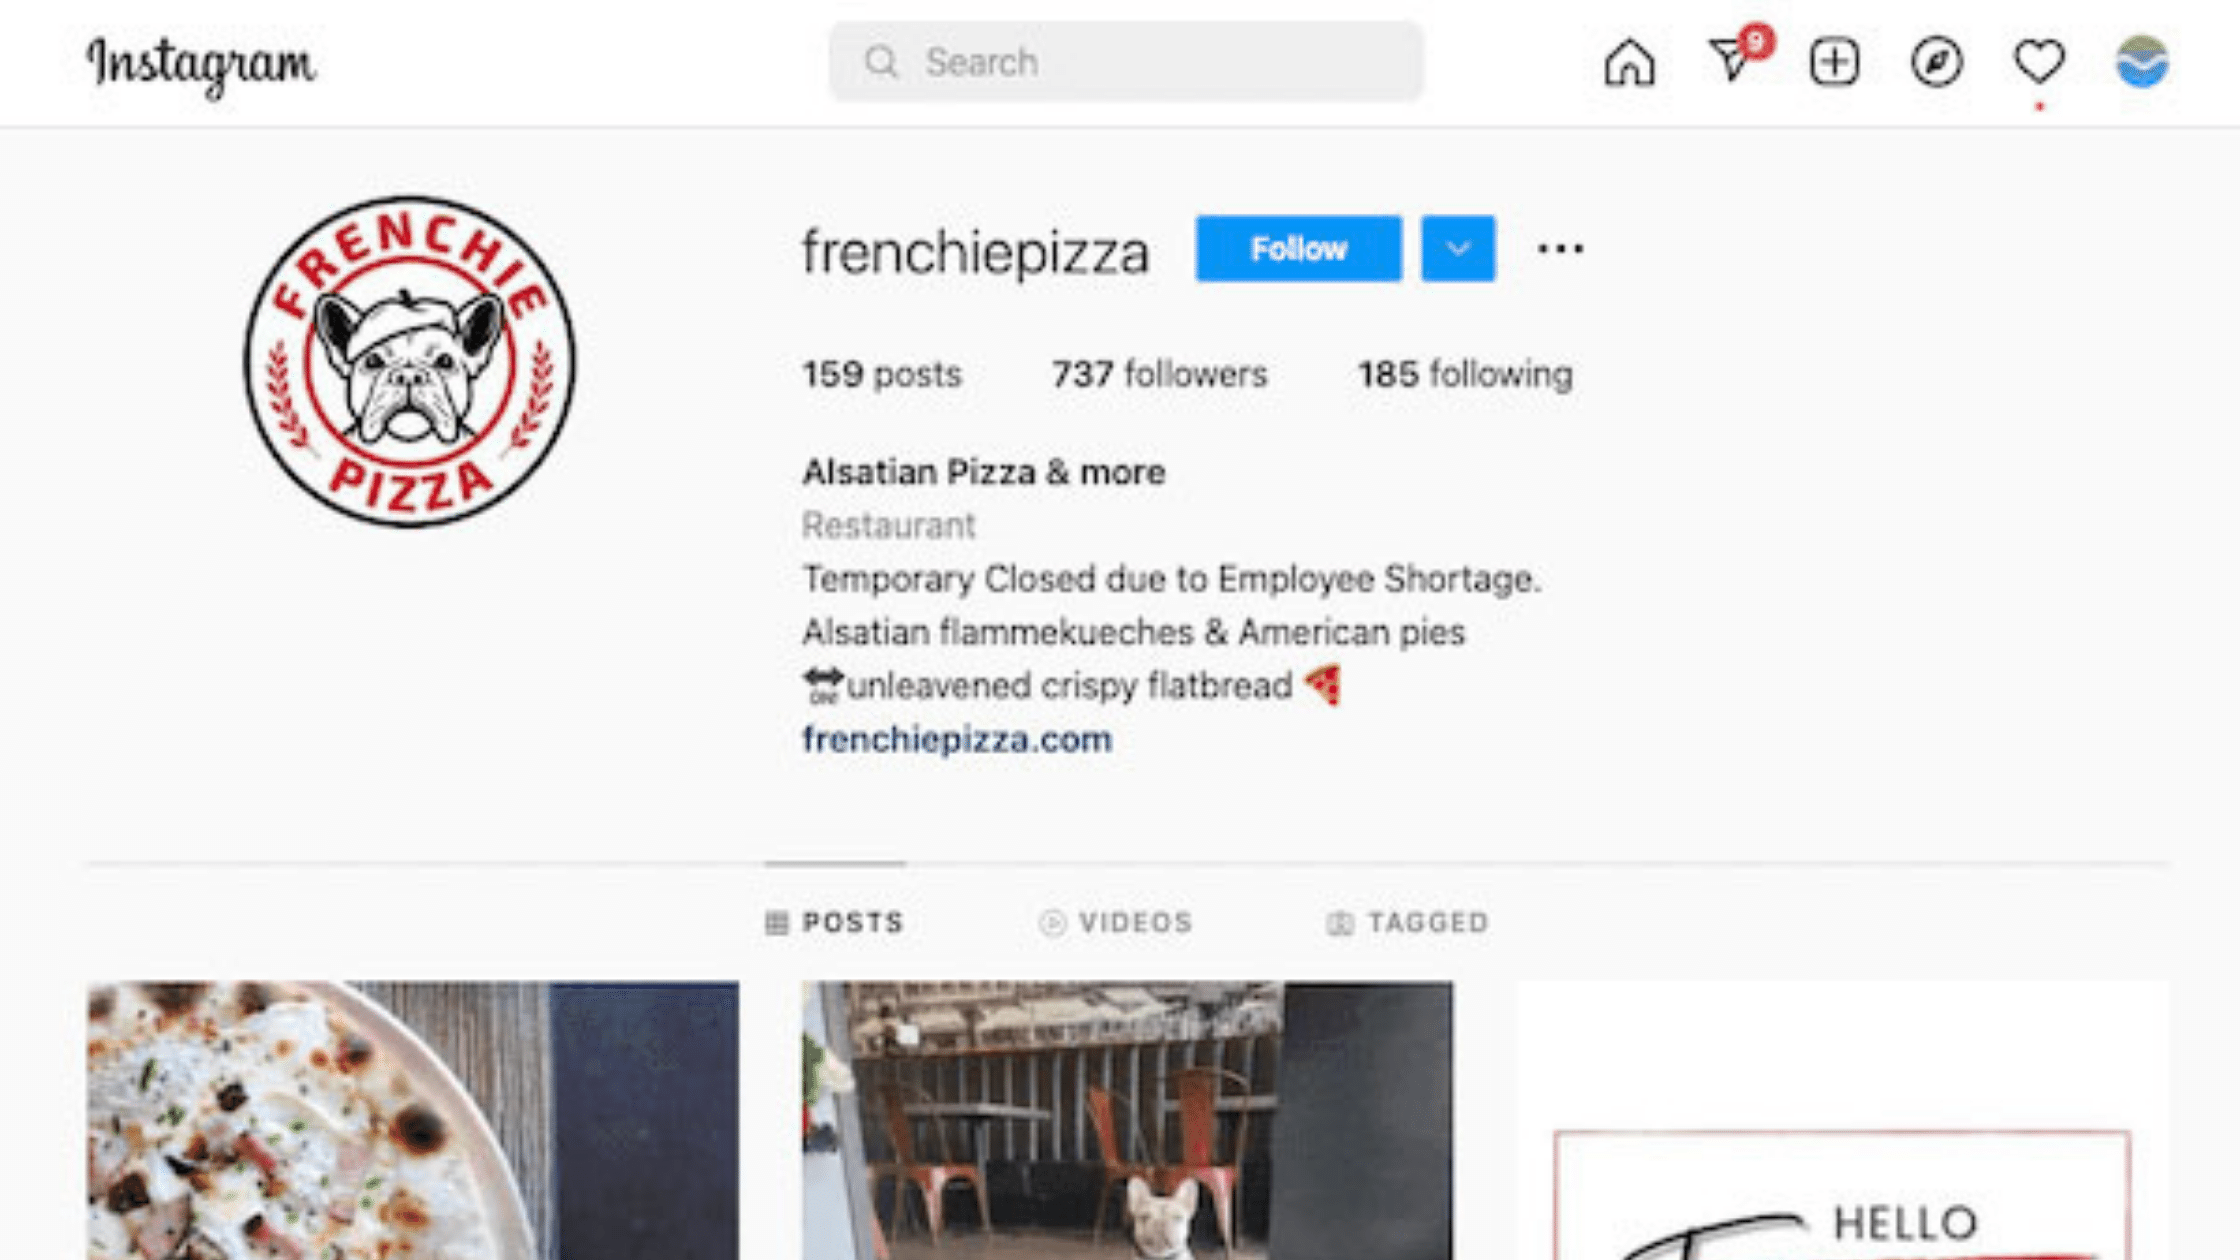 restaurant-marketing-ideas-instagram-style